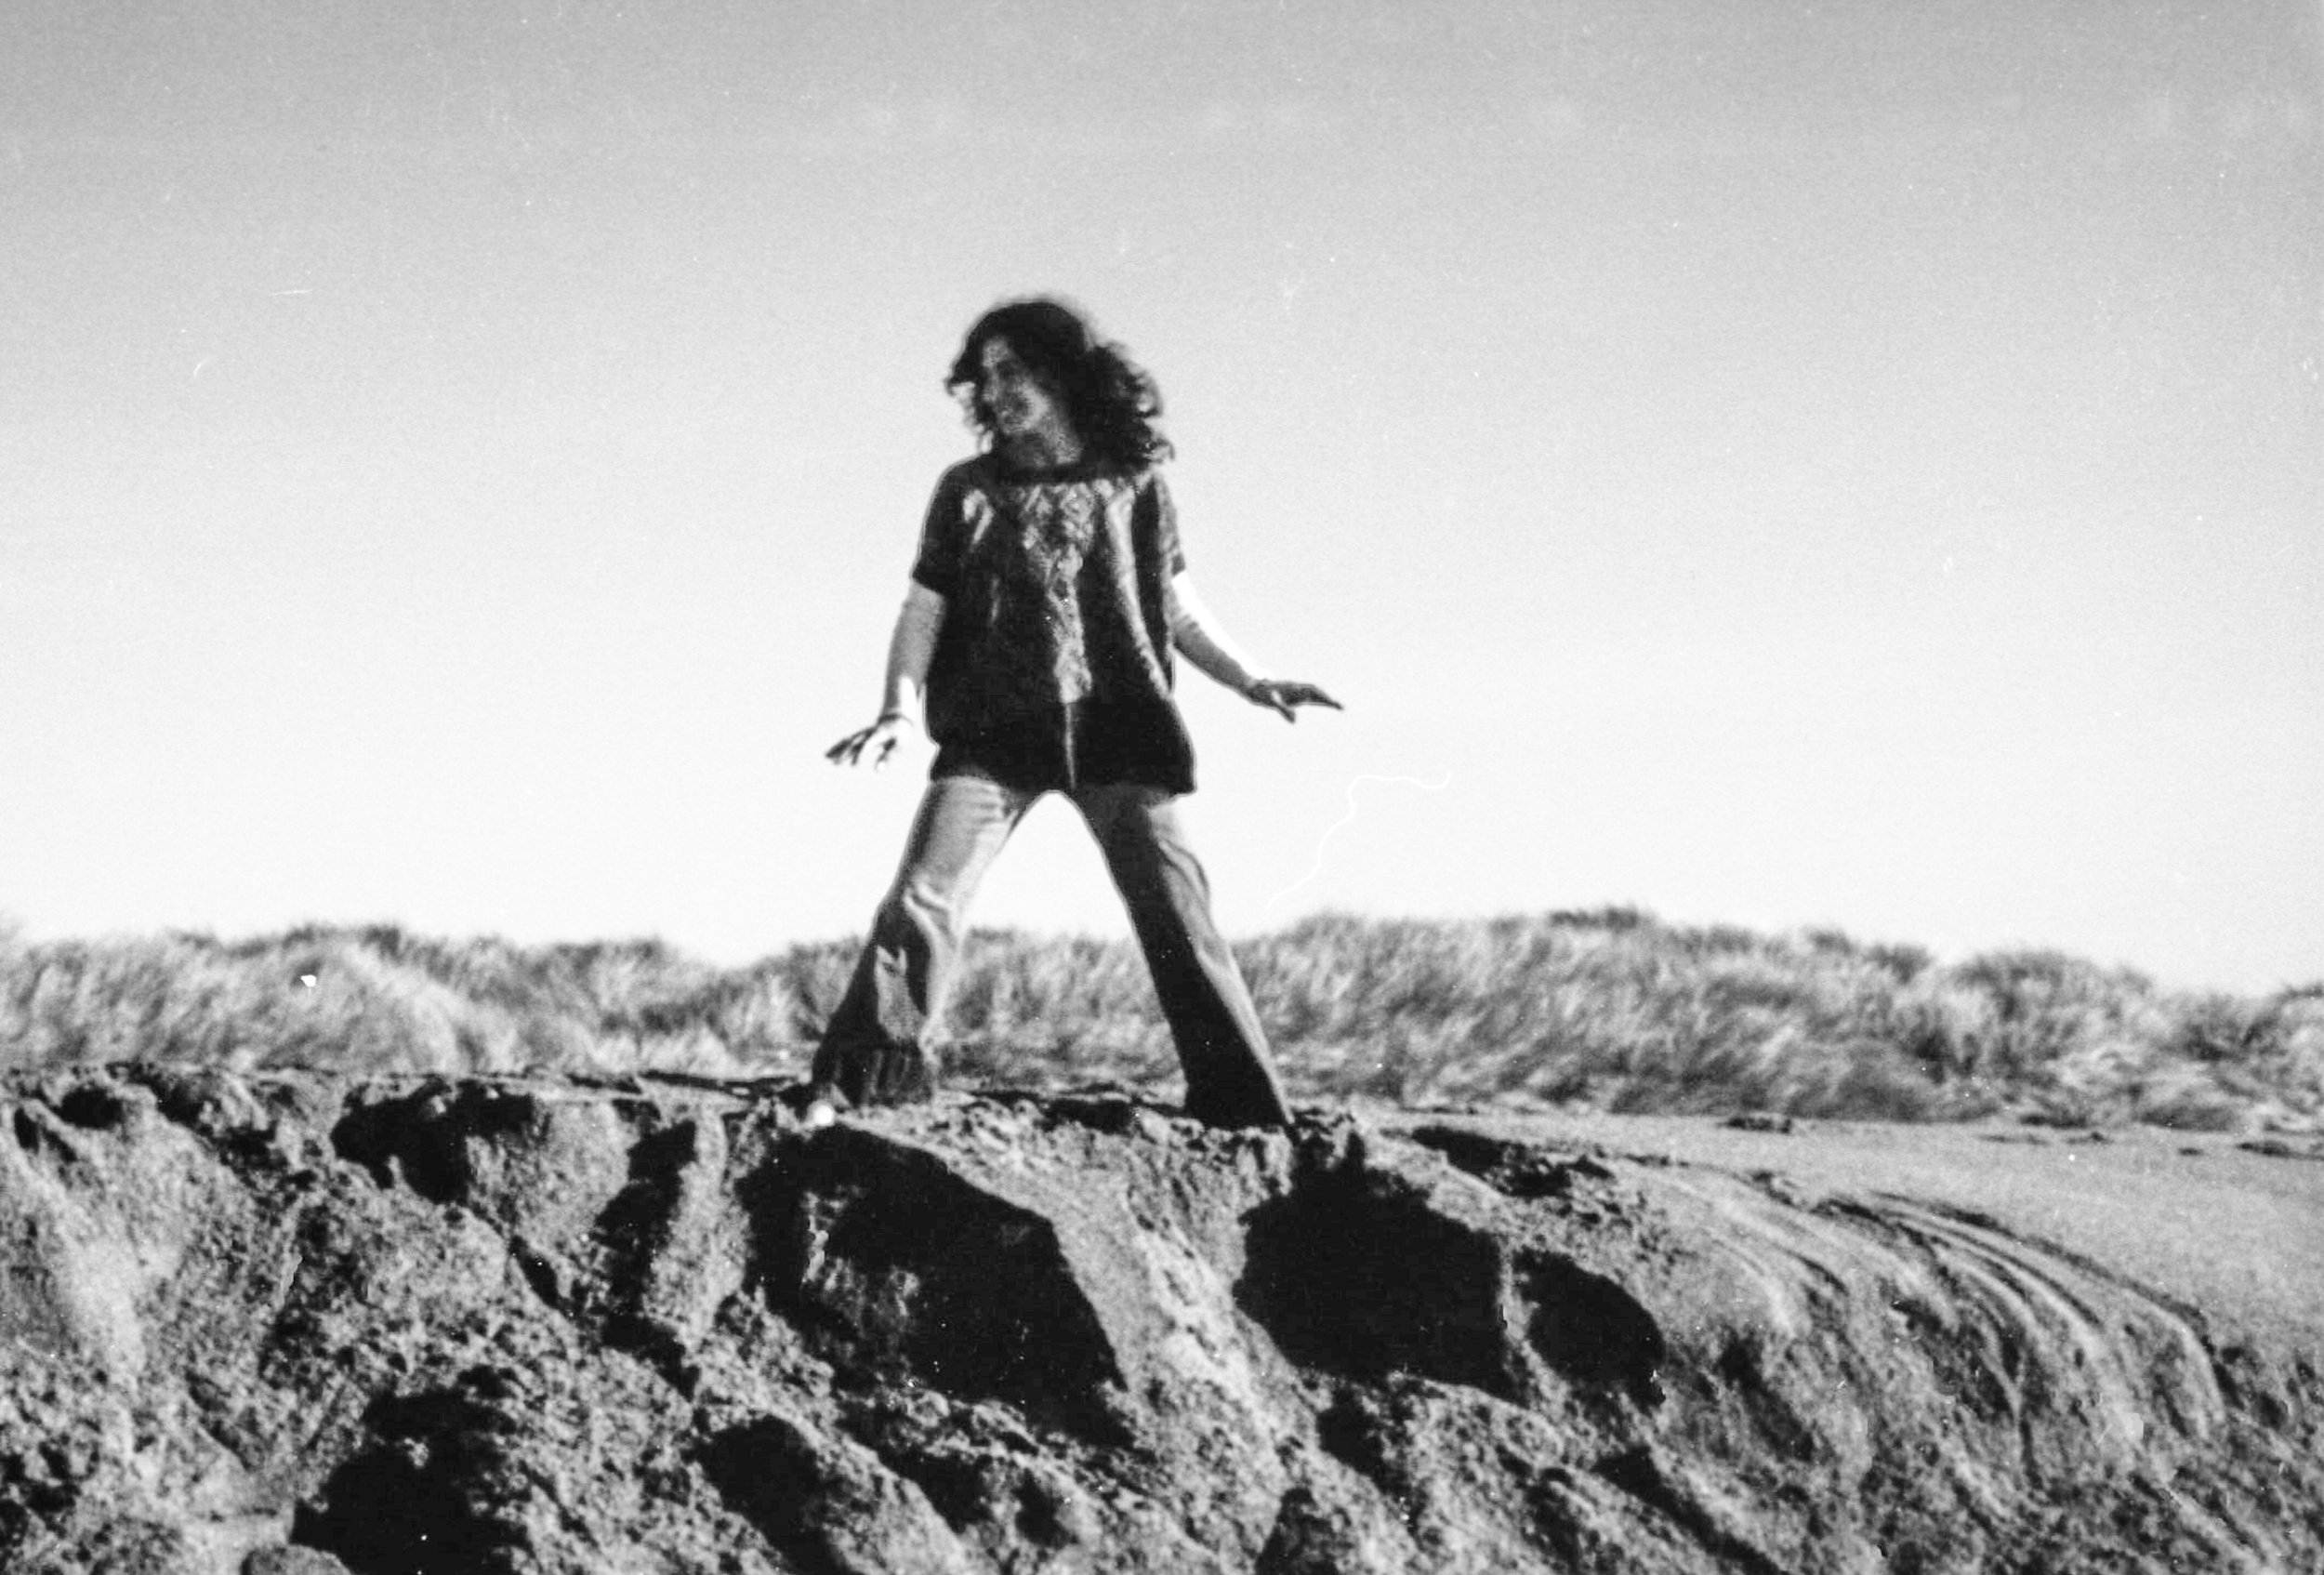 Jane, Pt. Reyes Seashore 1975